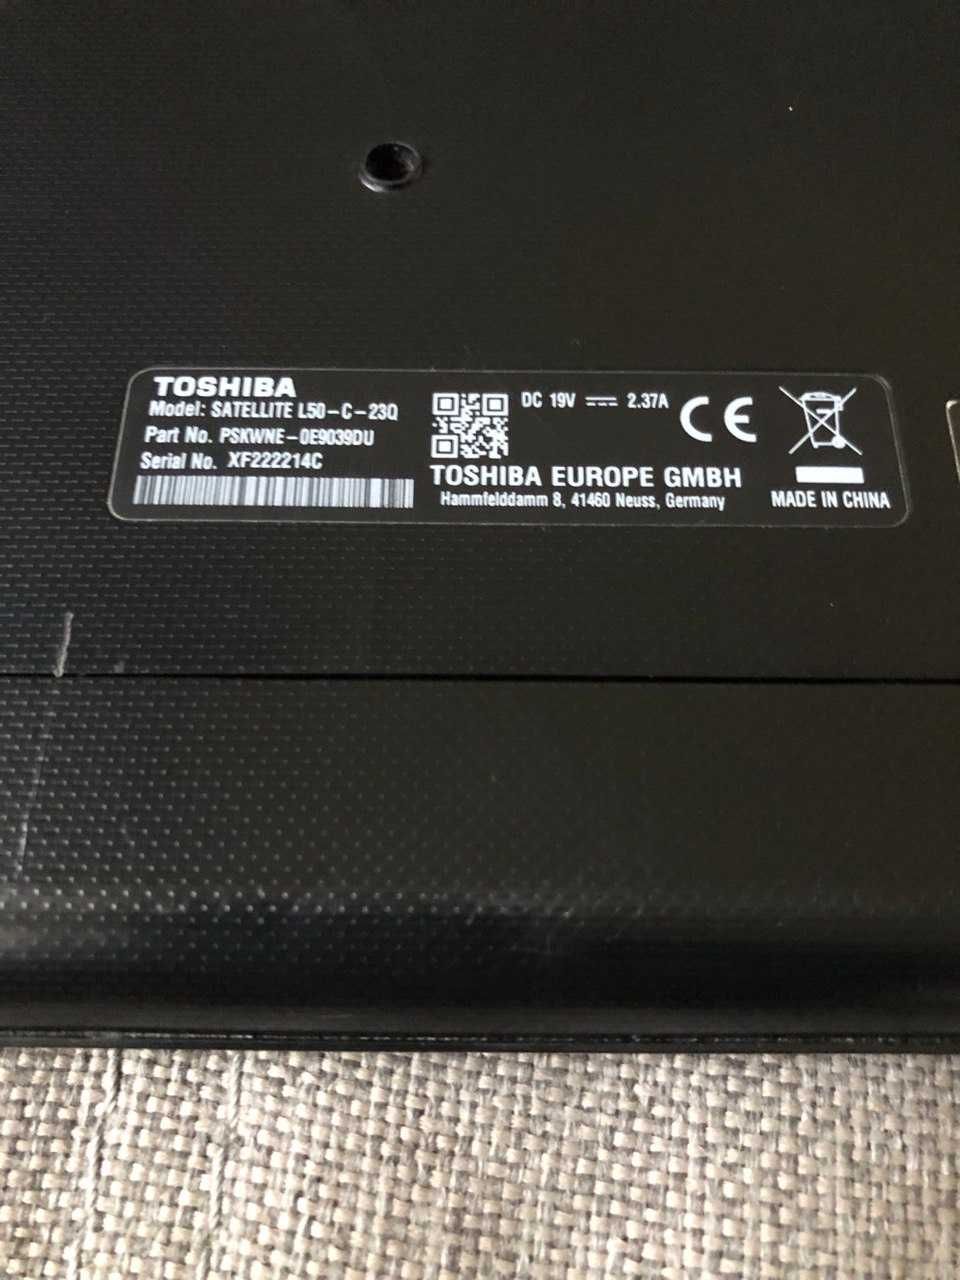 Toshiba satellite l50 c 23q